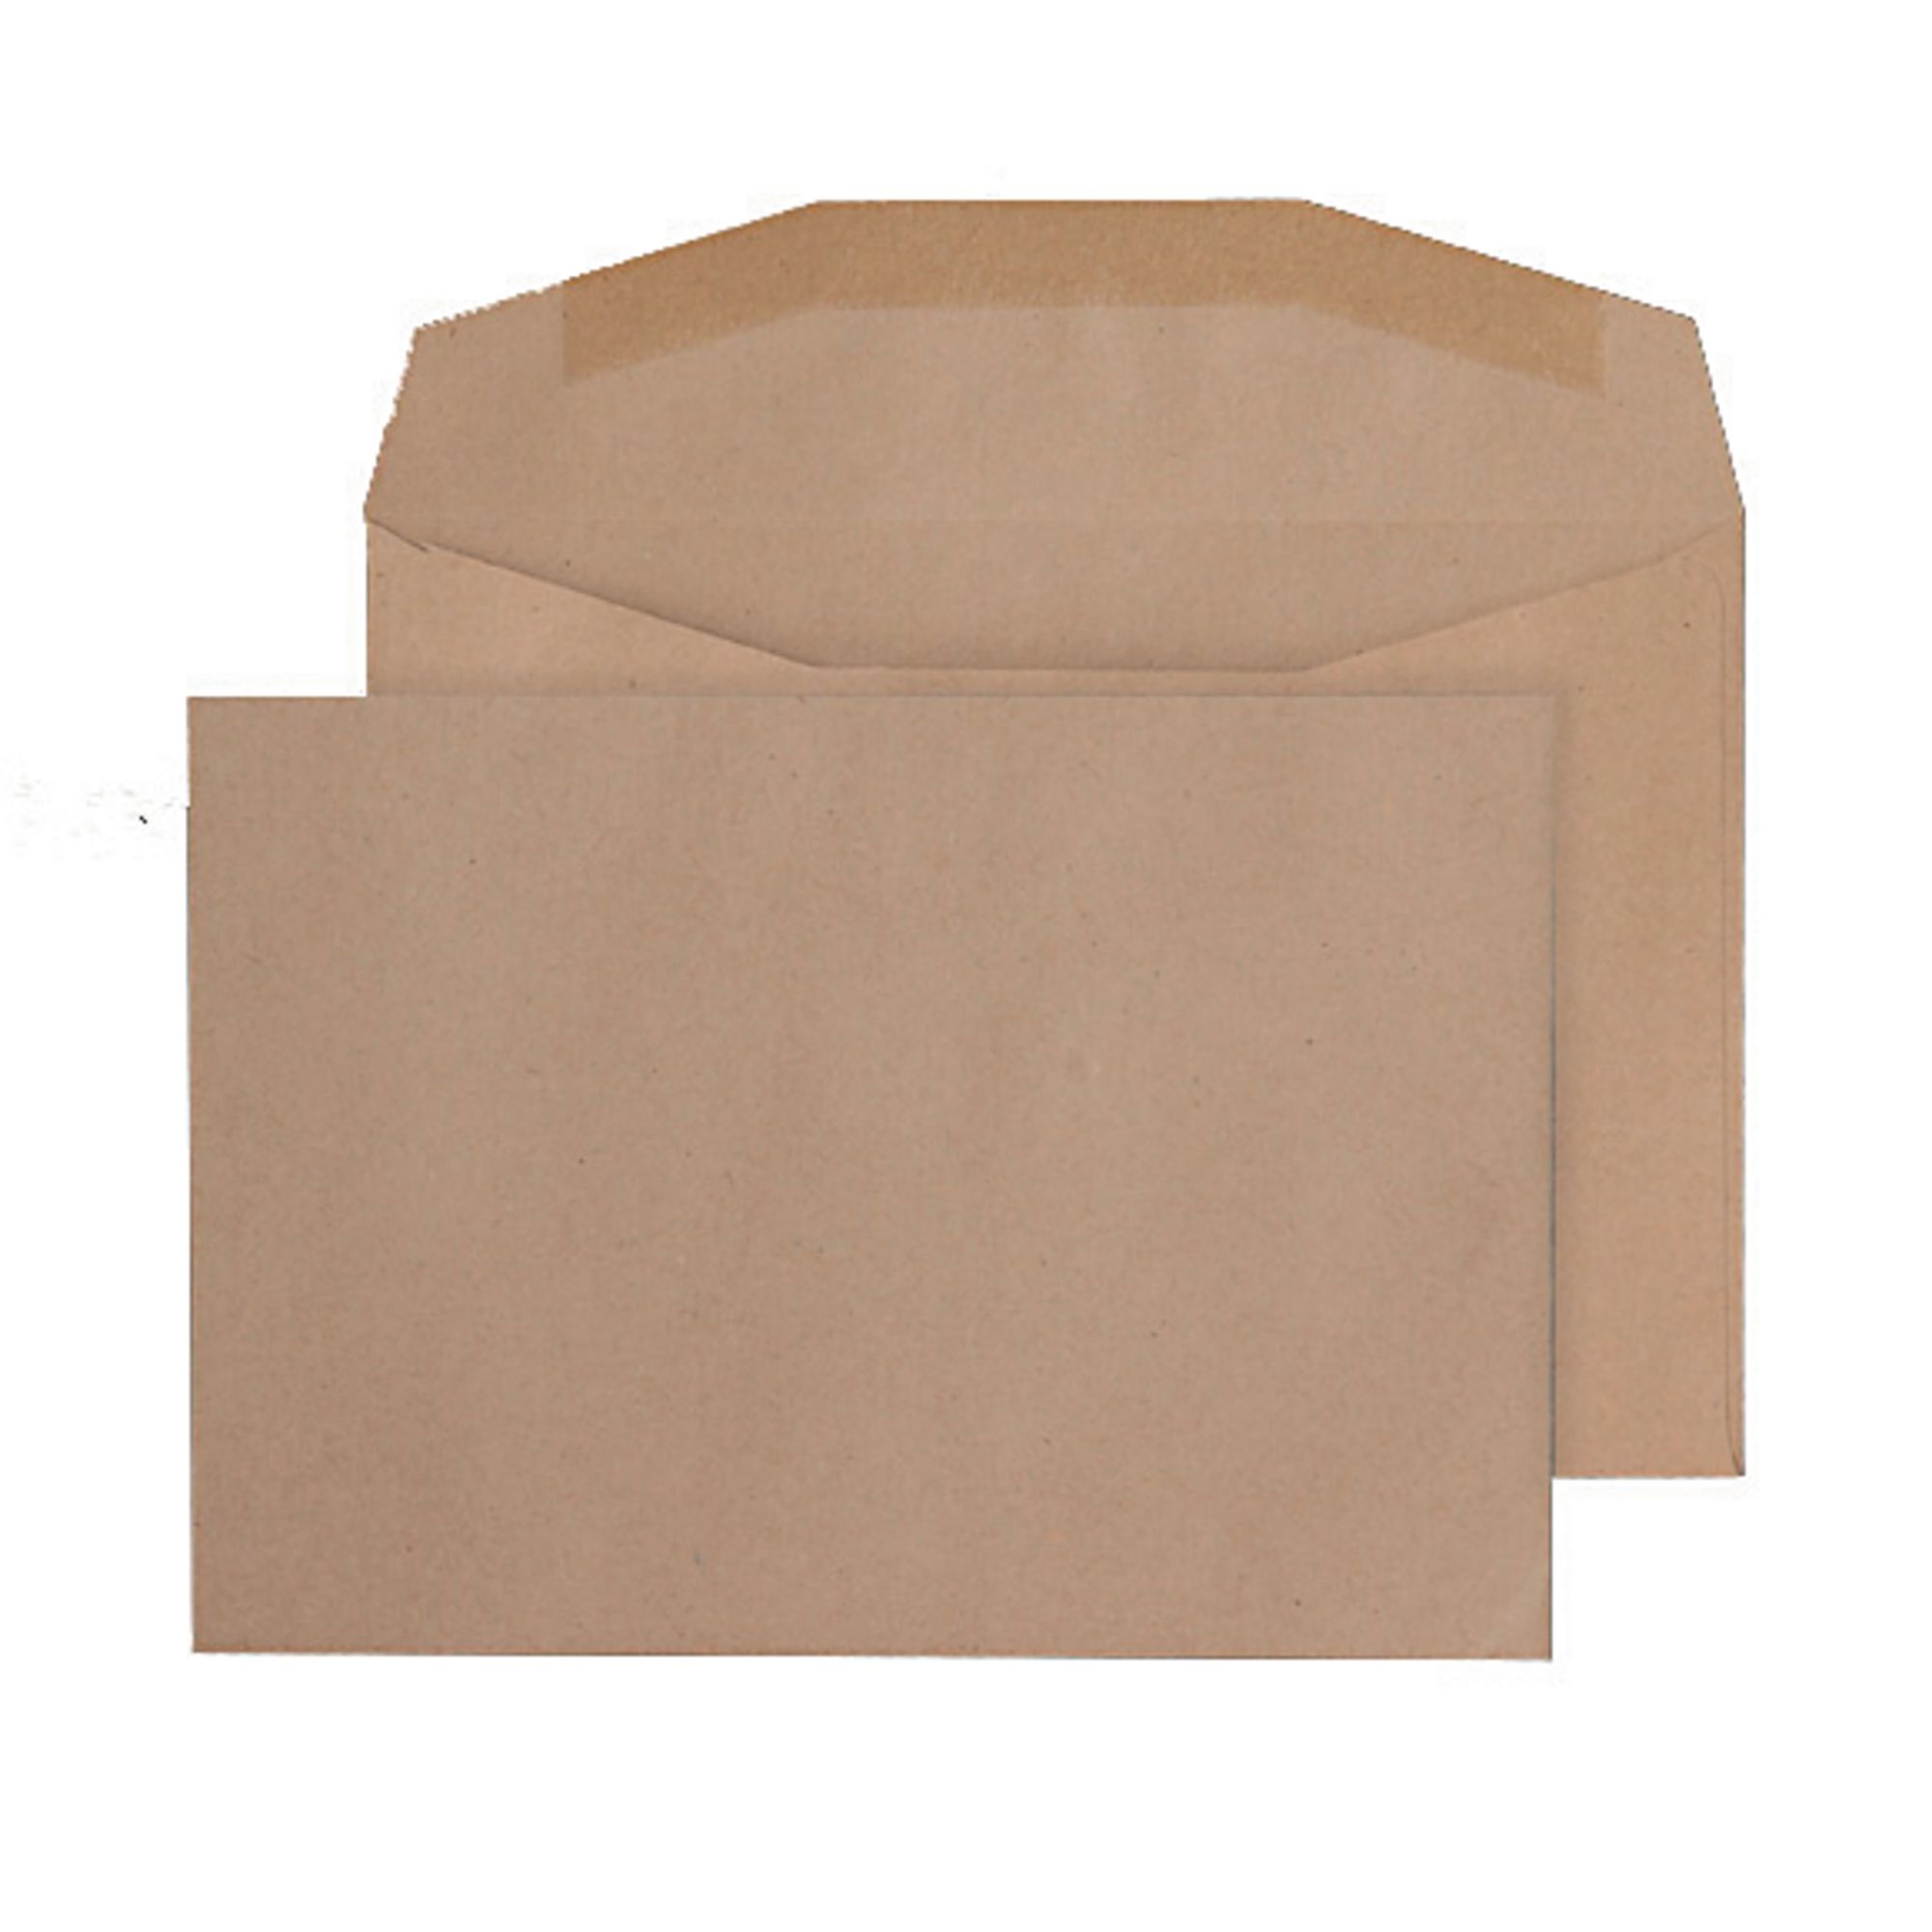 C6 Manilla Buff Gummed Pocket Envelopes - Box of 1000